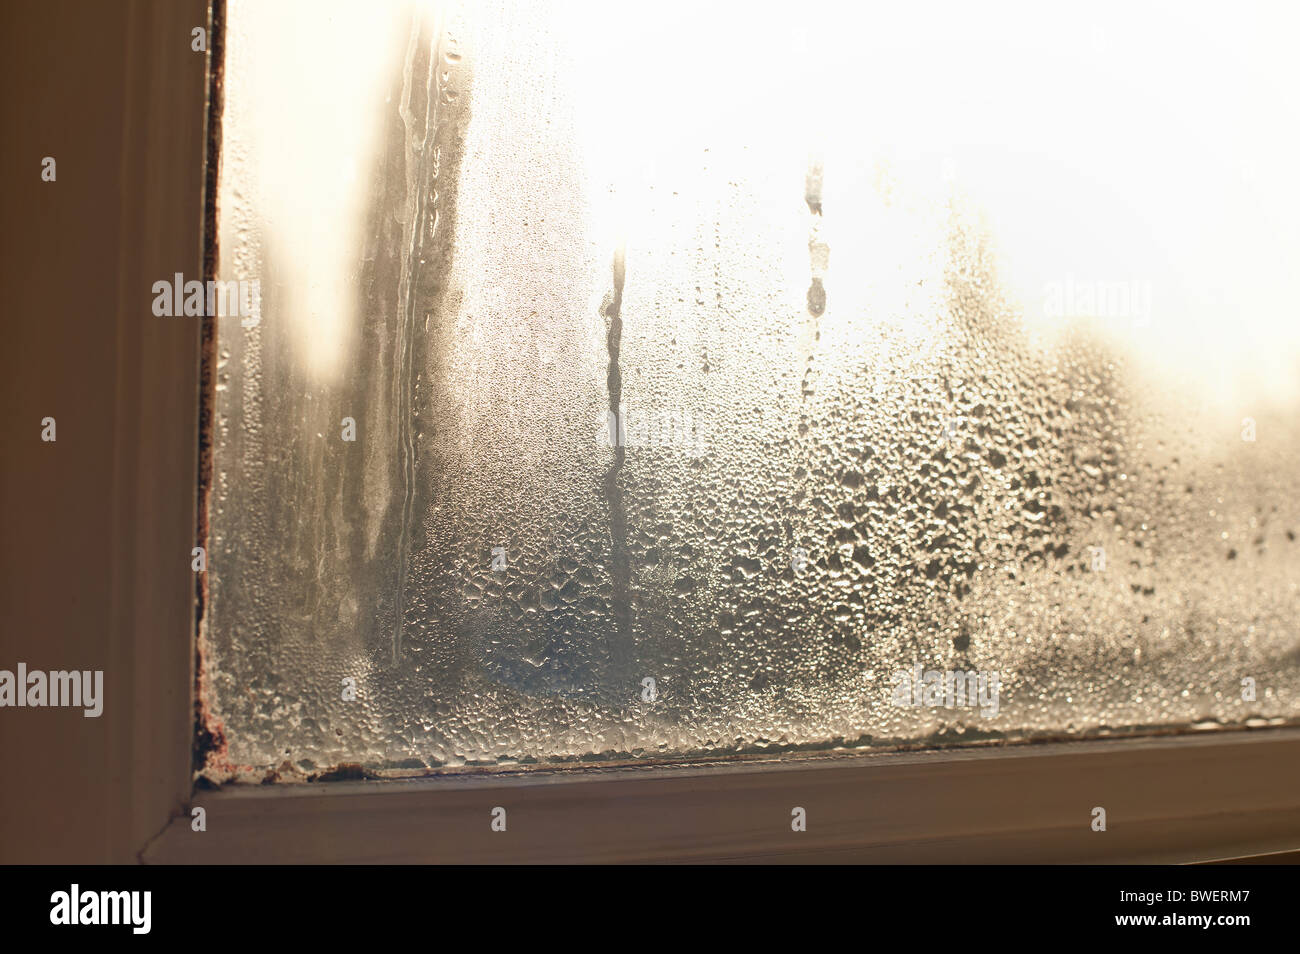 Fehlgeschlagen doppel Isolierverglasung Fenster Fenster in einem Holzrahmen mit Tröpfchen von Kondensation und feuchten Förderung von Fäulnis und Zerfall Stockfoto